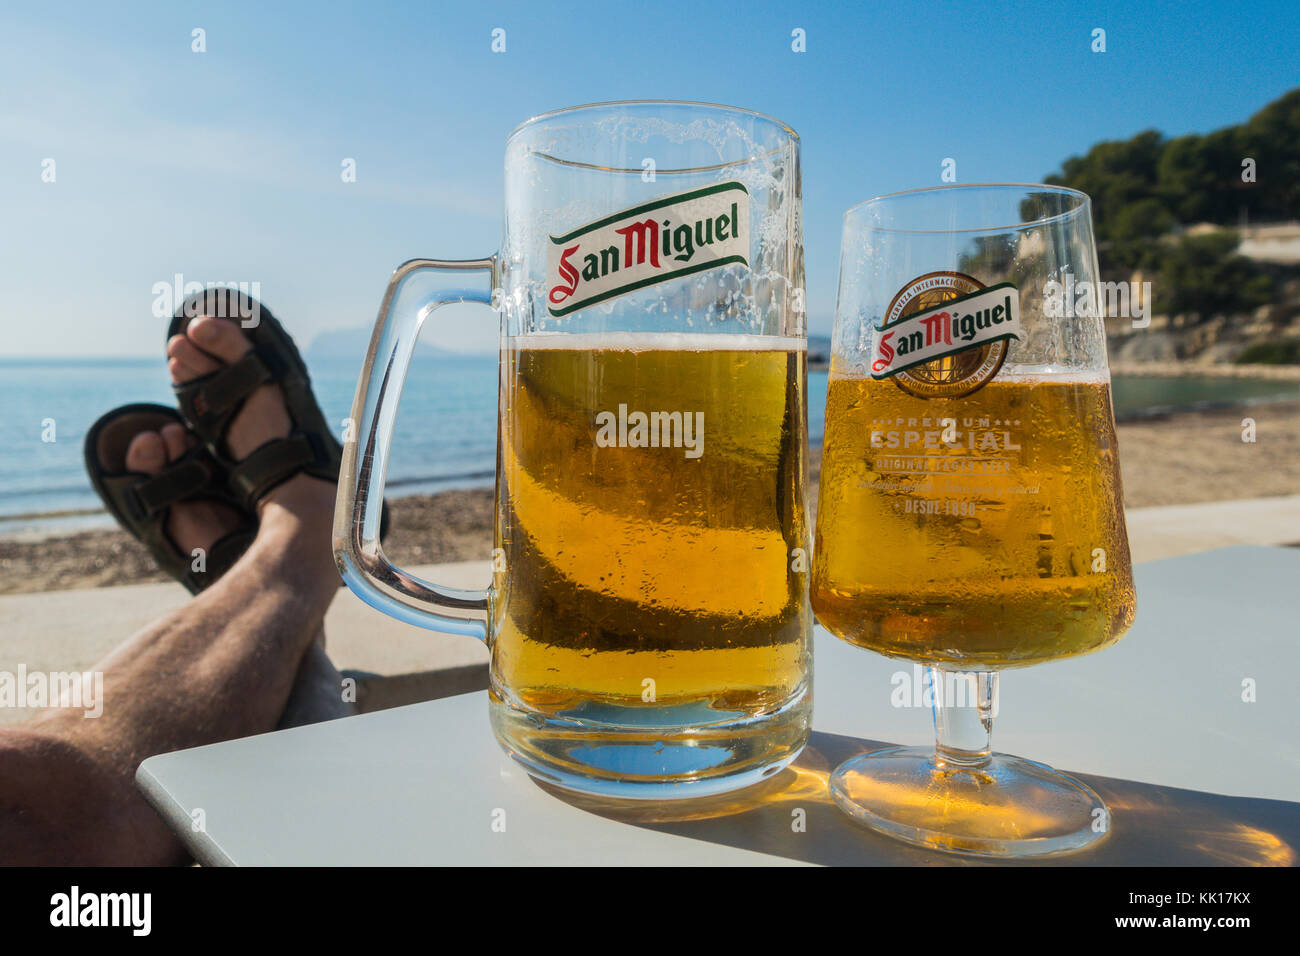 Zwei Gläser San Miguel Bier halb voll, ein großes und ein kleines, mit mans Füße in Sandalen aufgestützt am Meer in der Sonne Stockfoto